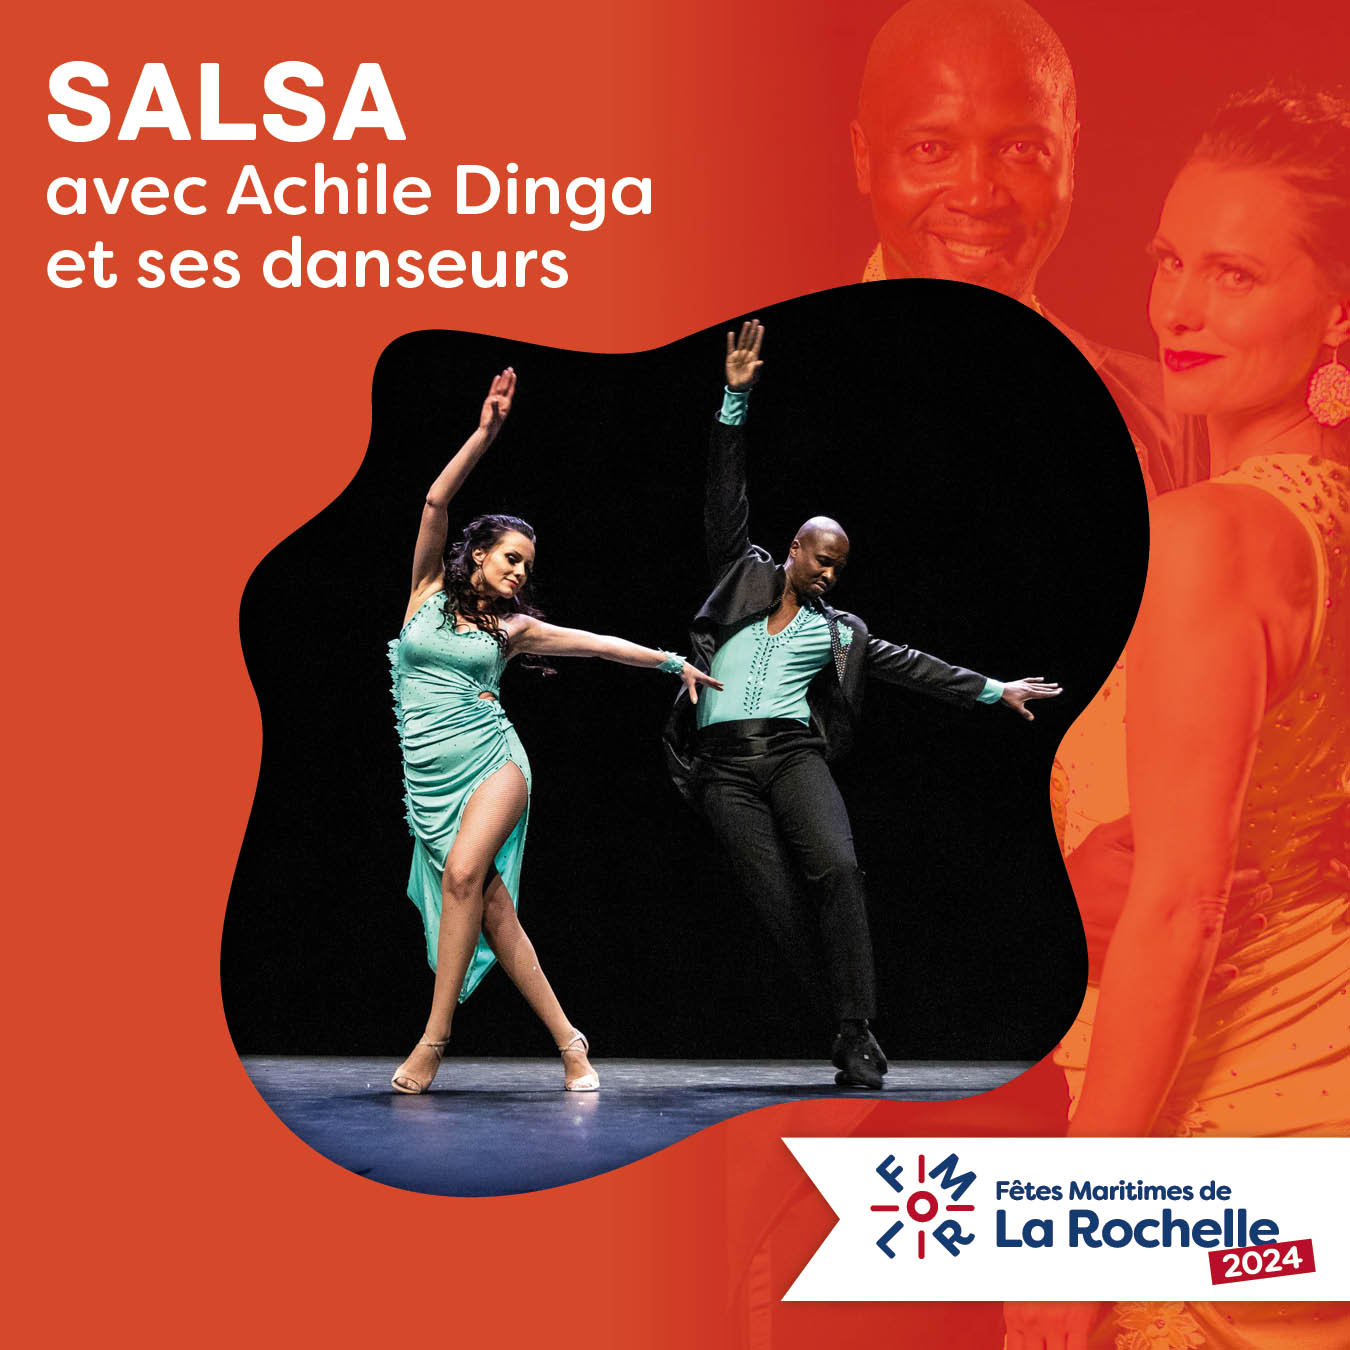 Achile Dinga (Salsa) aux Fêtes Maritimes de La Rochelle 2024